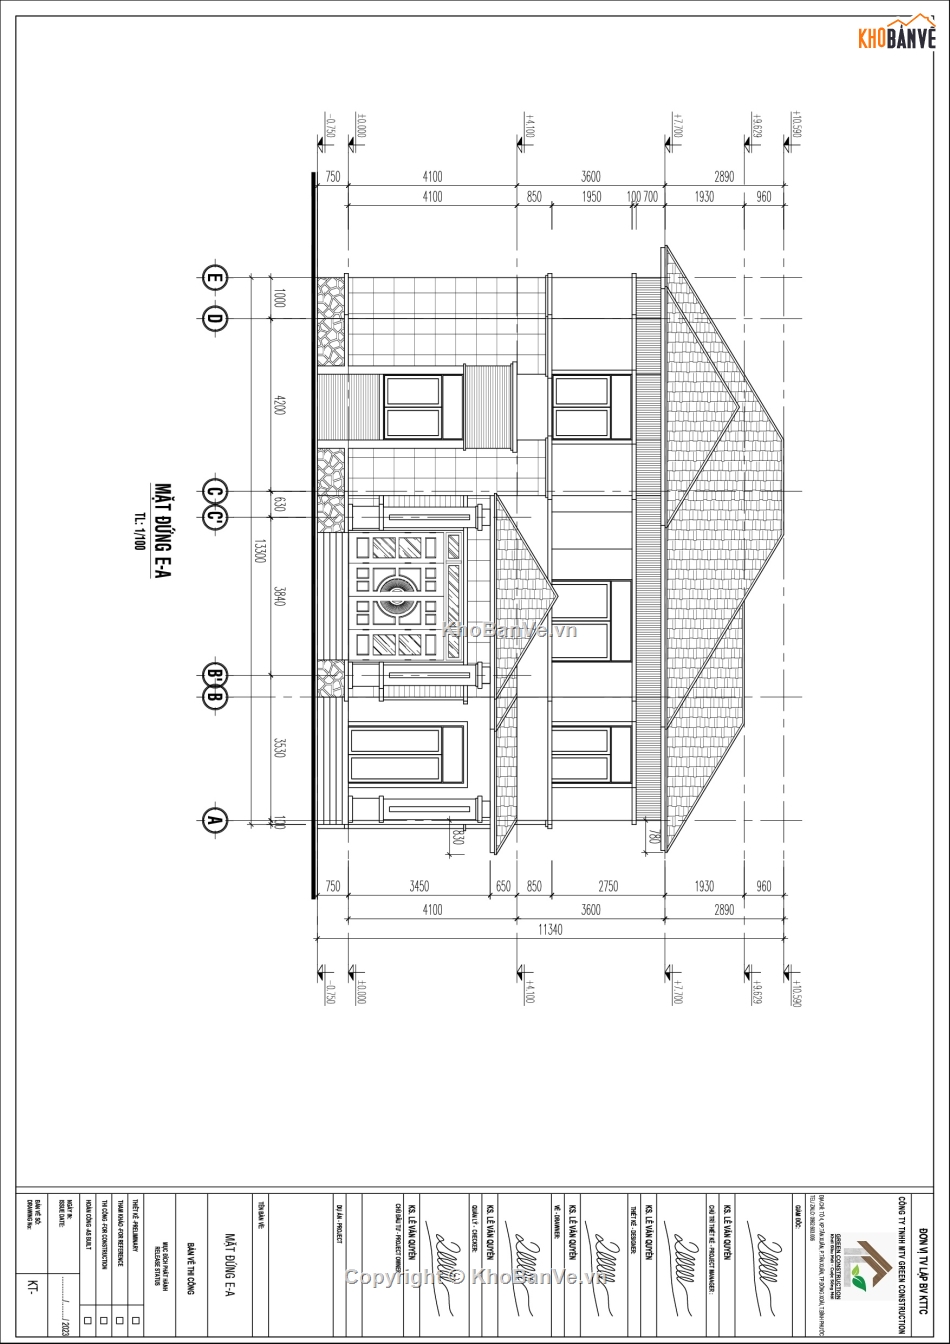 Hồ sơ thiết kế nhà mái nhật,bản vẽ thiết kế công nhà mái nhật,nhà mái nhật 150m2,nhà mái nhật 1 trệt 2 lầu,nhà mái nhật 1 trệt 2 lầu 150m2,nhà mái nhật